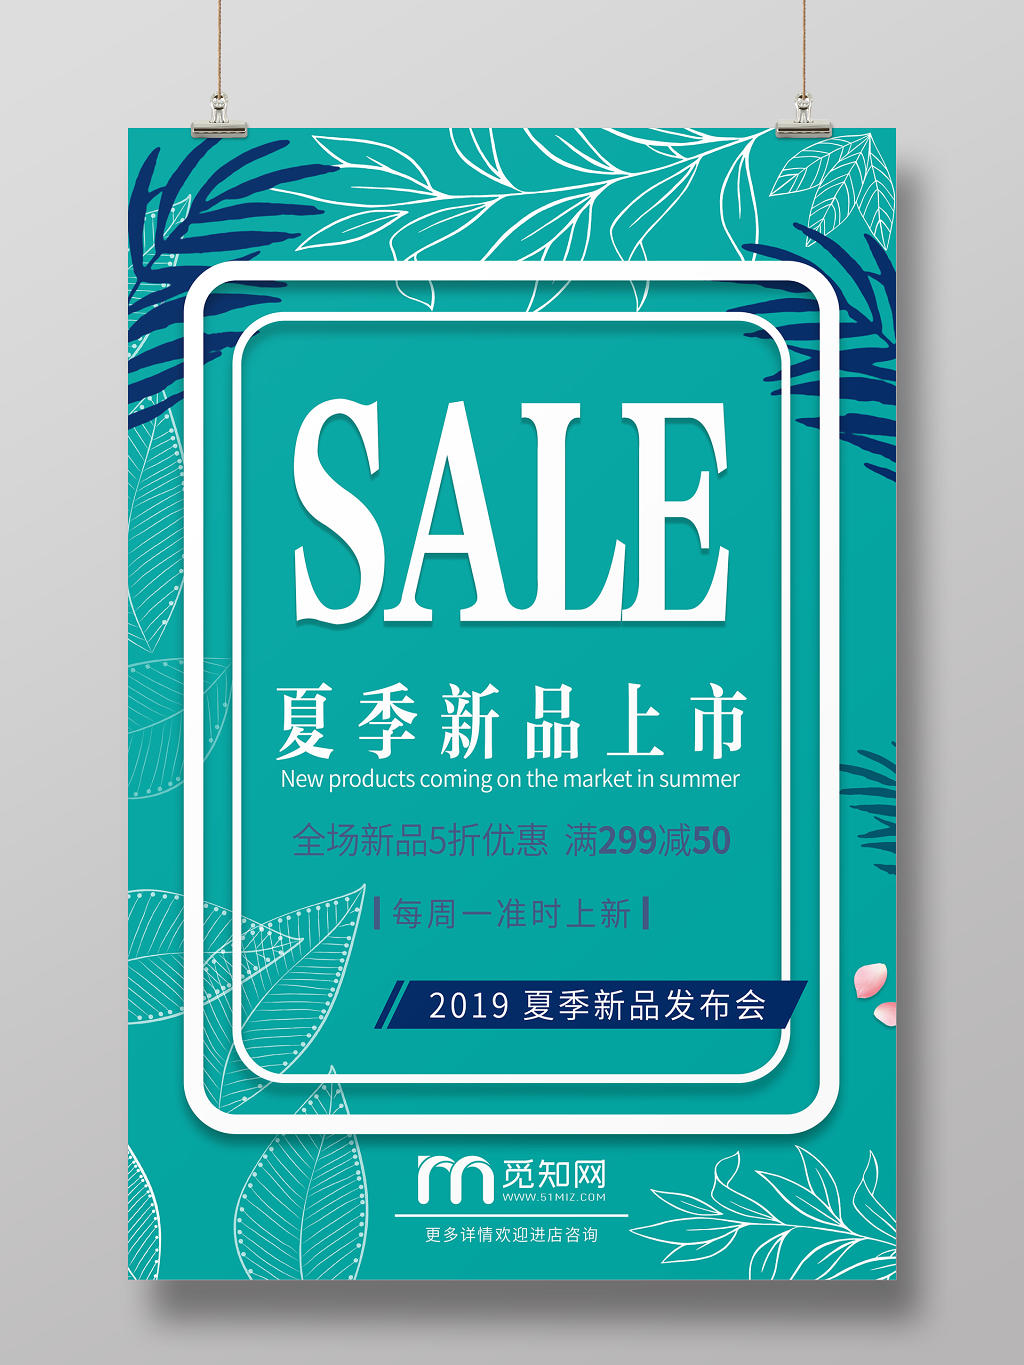 蓝色简约清新夏季新品上市SALE促销活动海报